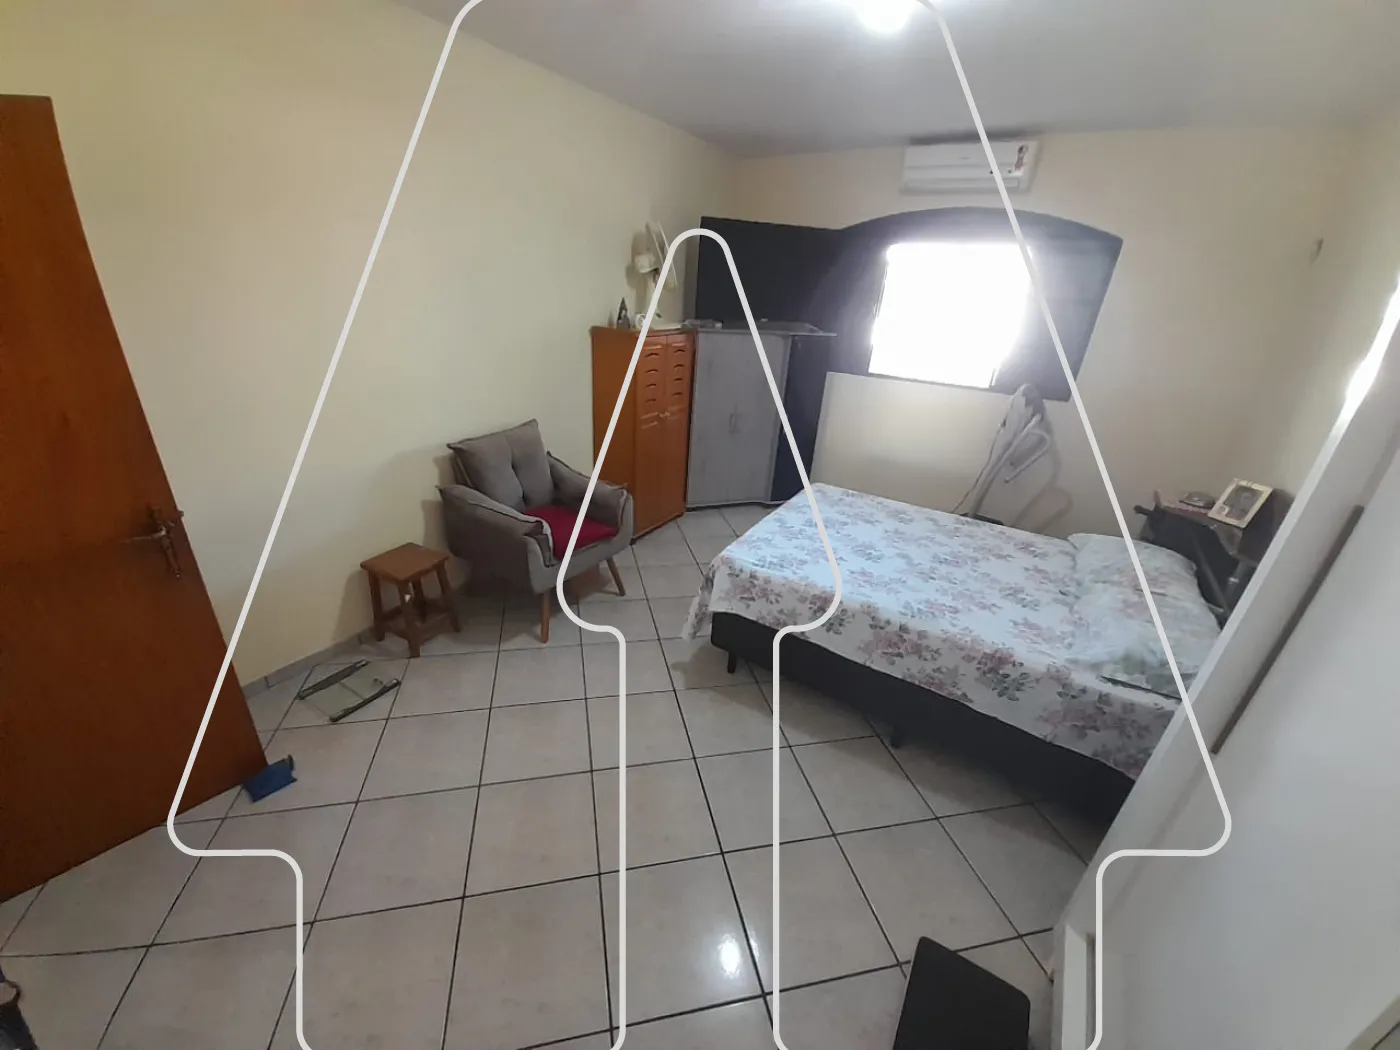 Comprar Casa / Residencial em Araçatuba R$ 490.000,00 - Foto 11